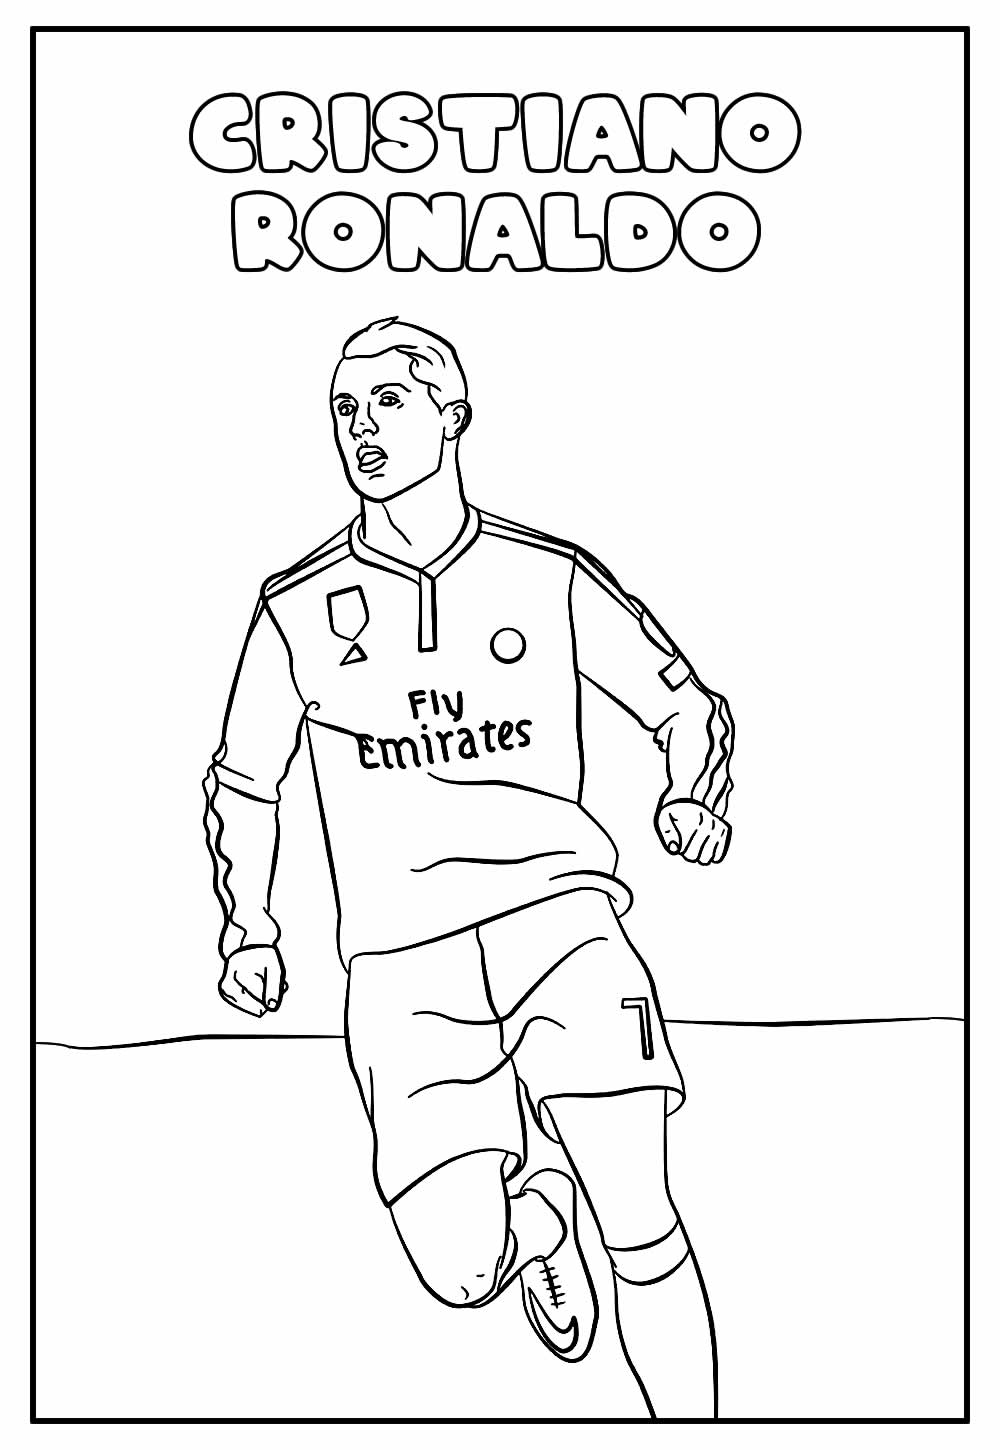 Desenho Educativo de Cristiano Ronaldo para colorir